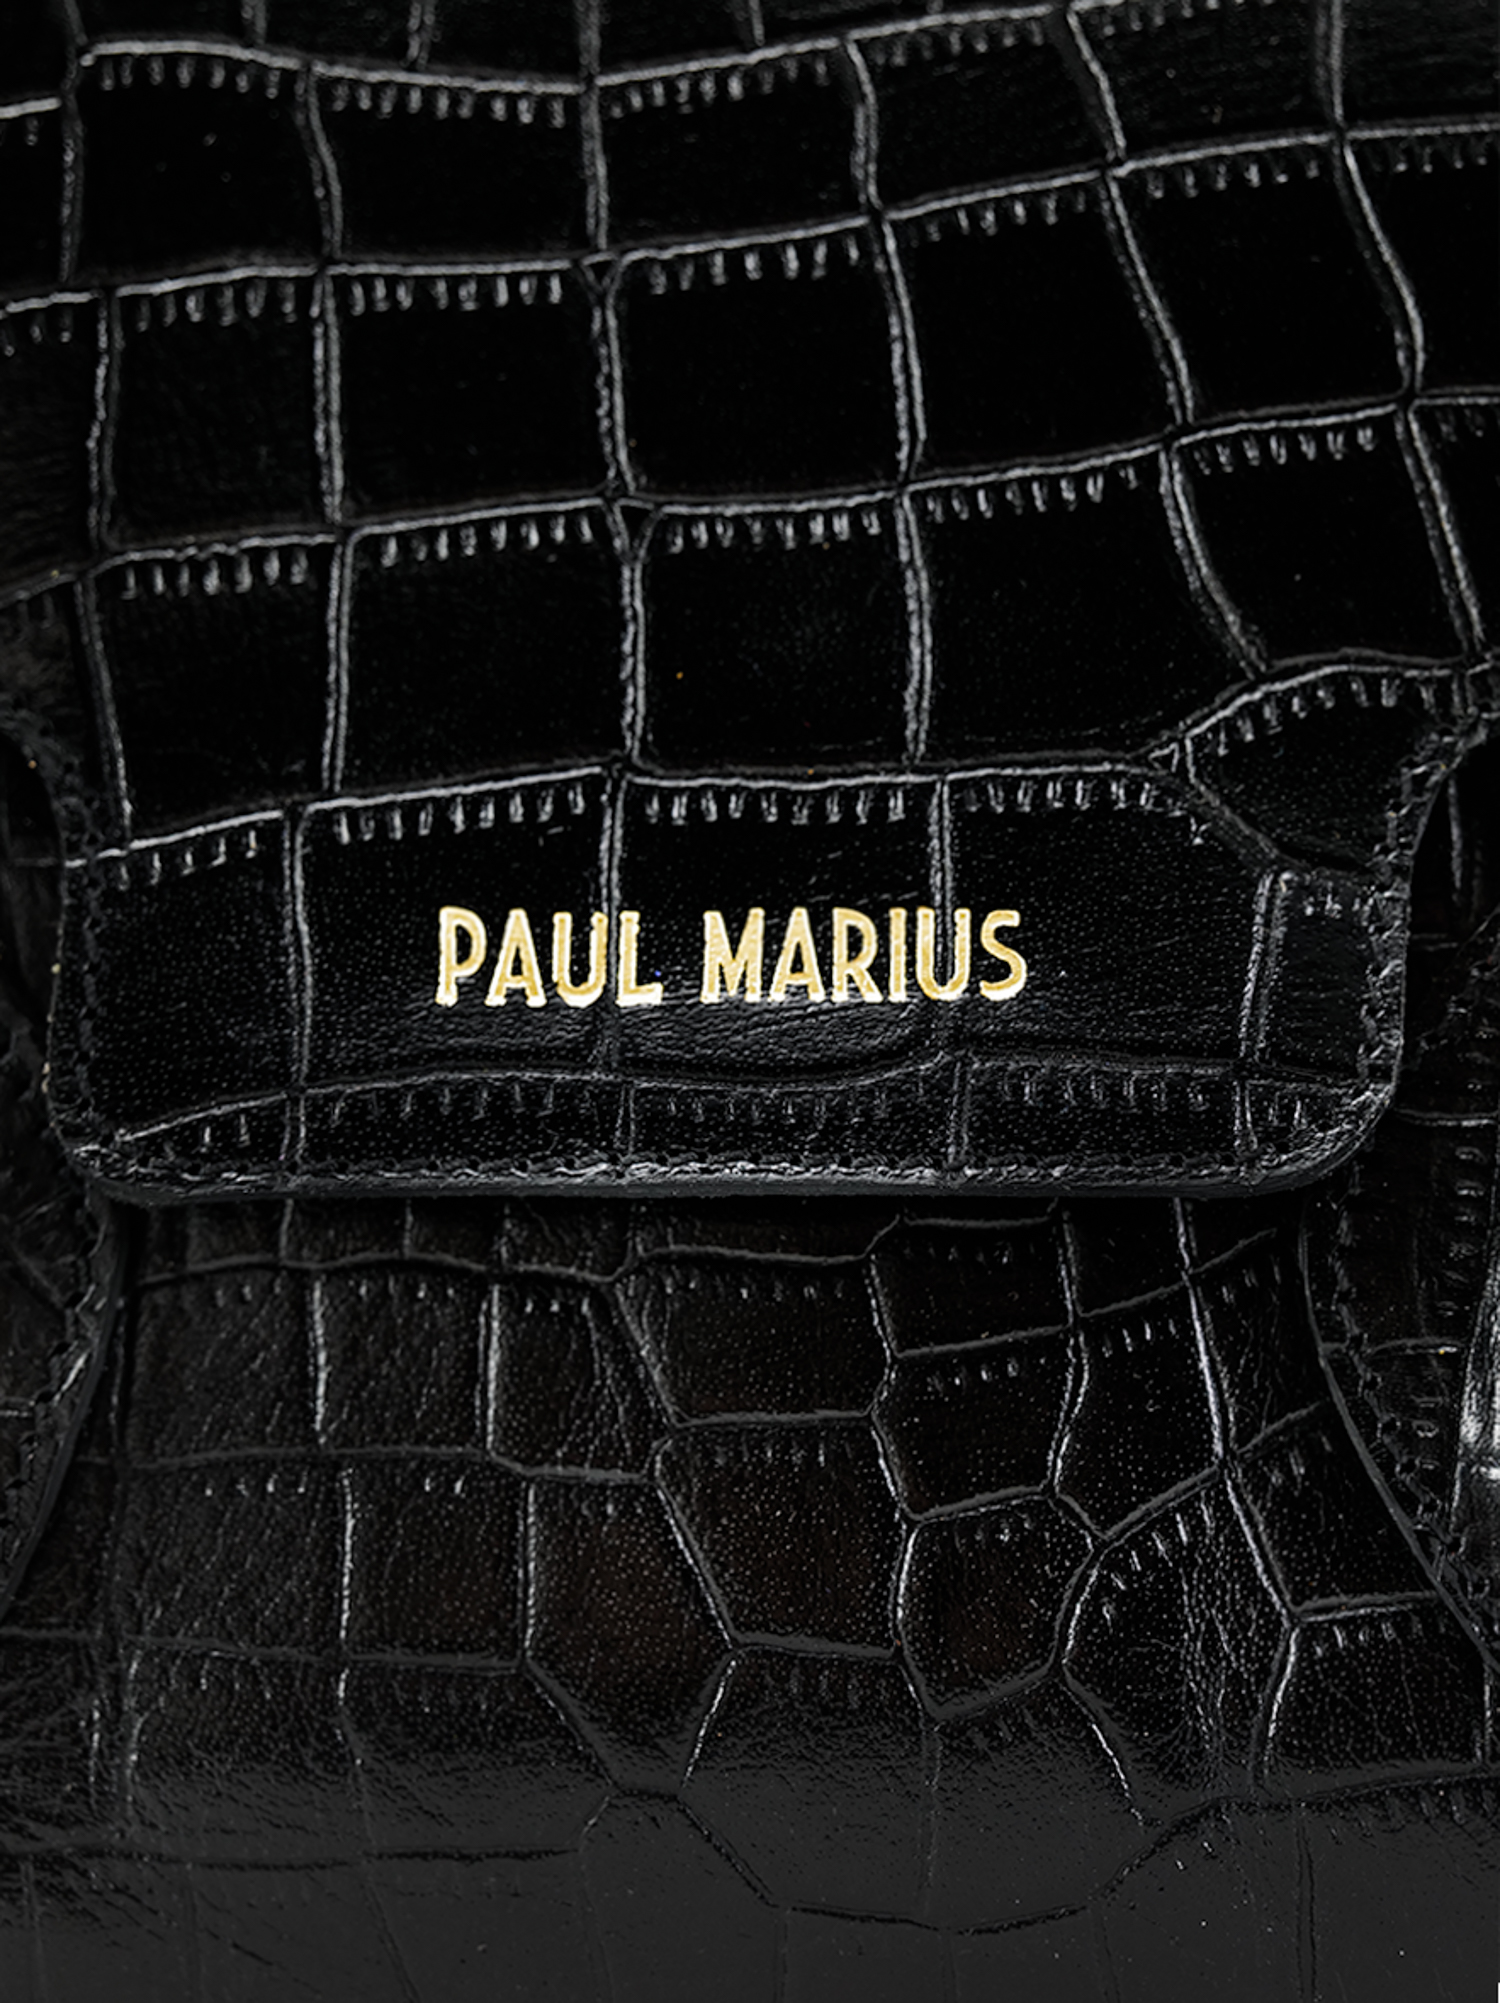 leather-handbag-for-woman-black-matter-texture-colette-s-alligator-jet-black-paul-marius-3760125357478